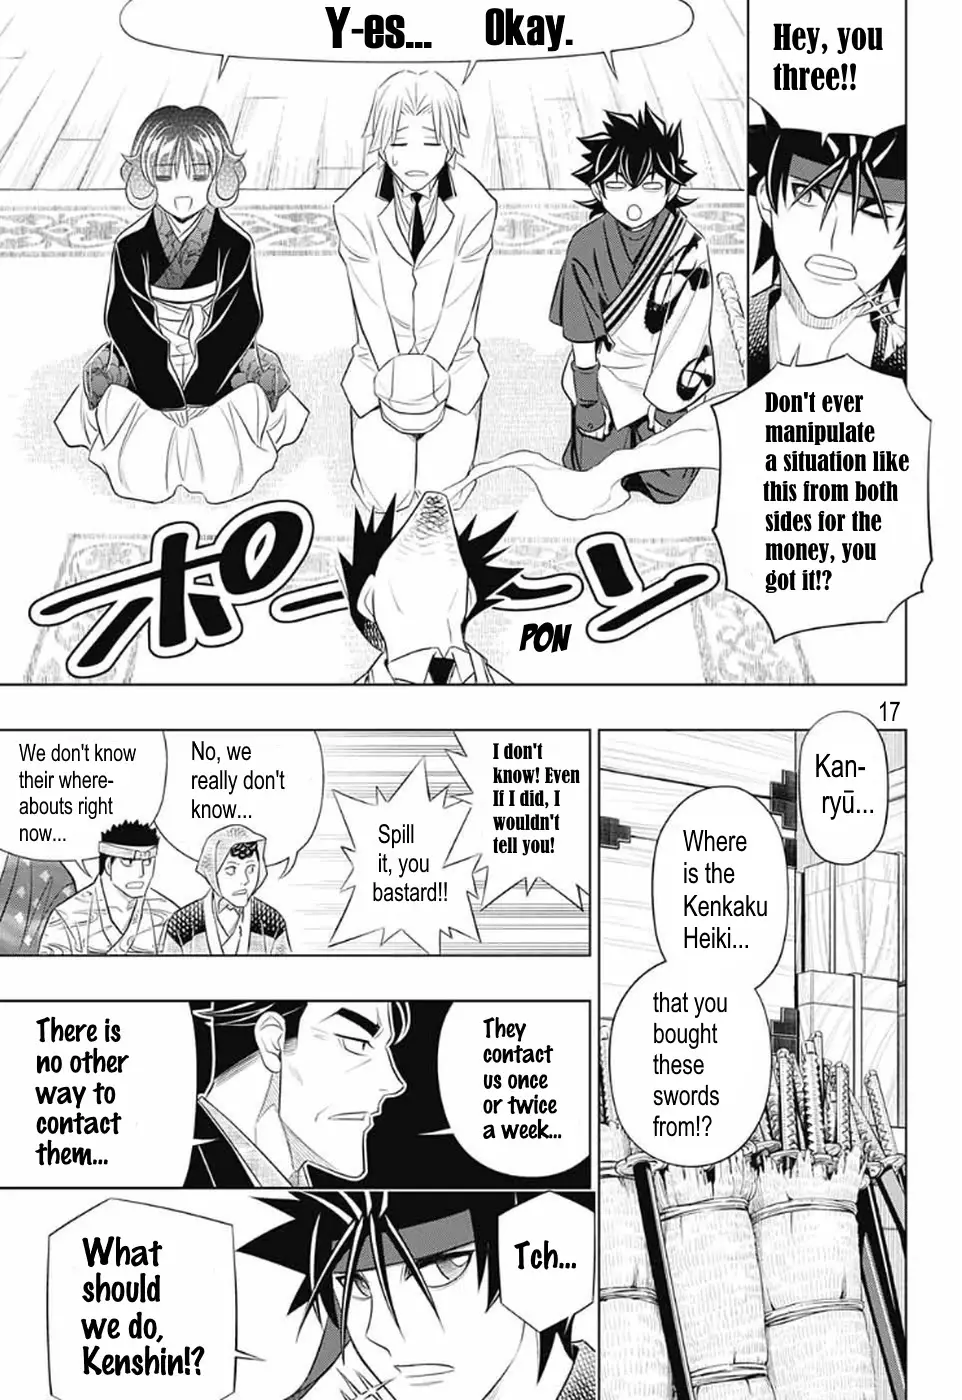 Rurouni Kenshin: Hokkaido Arc - 25 page 17